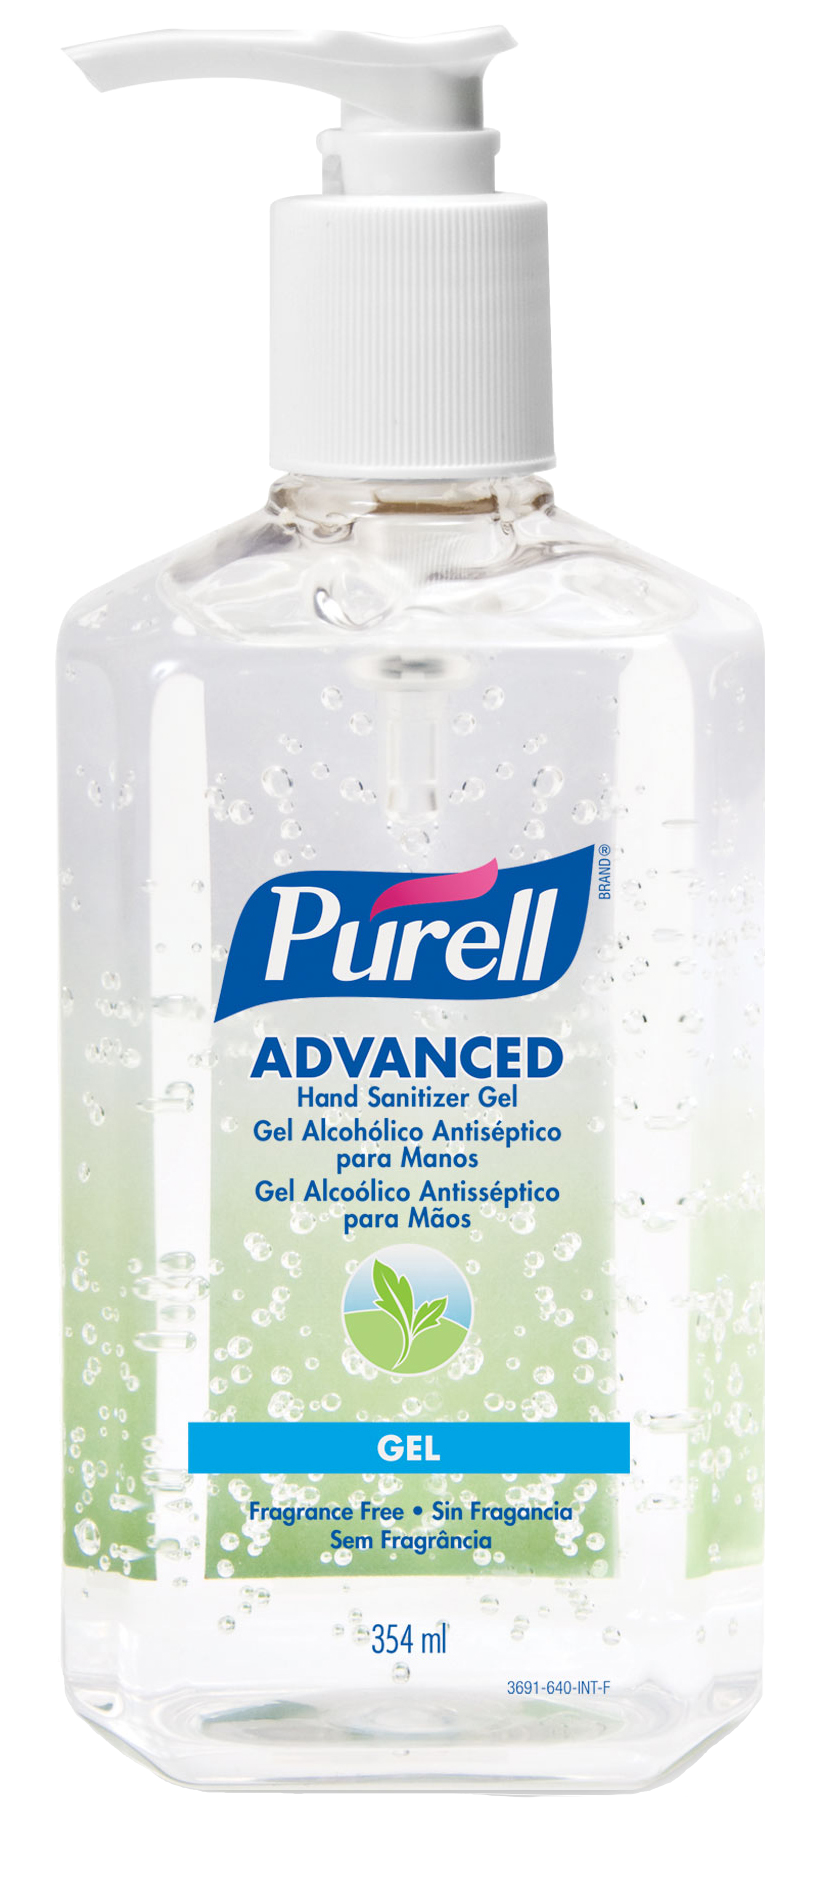 Gel rửa tay khô diệt khuẩn Purell Advanced 354ml - Chính hãng Mỹ